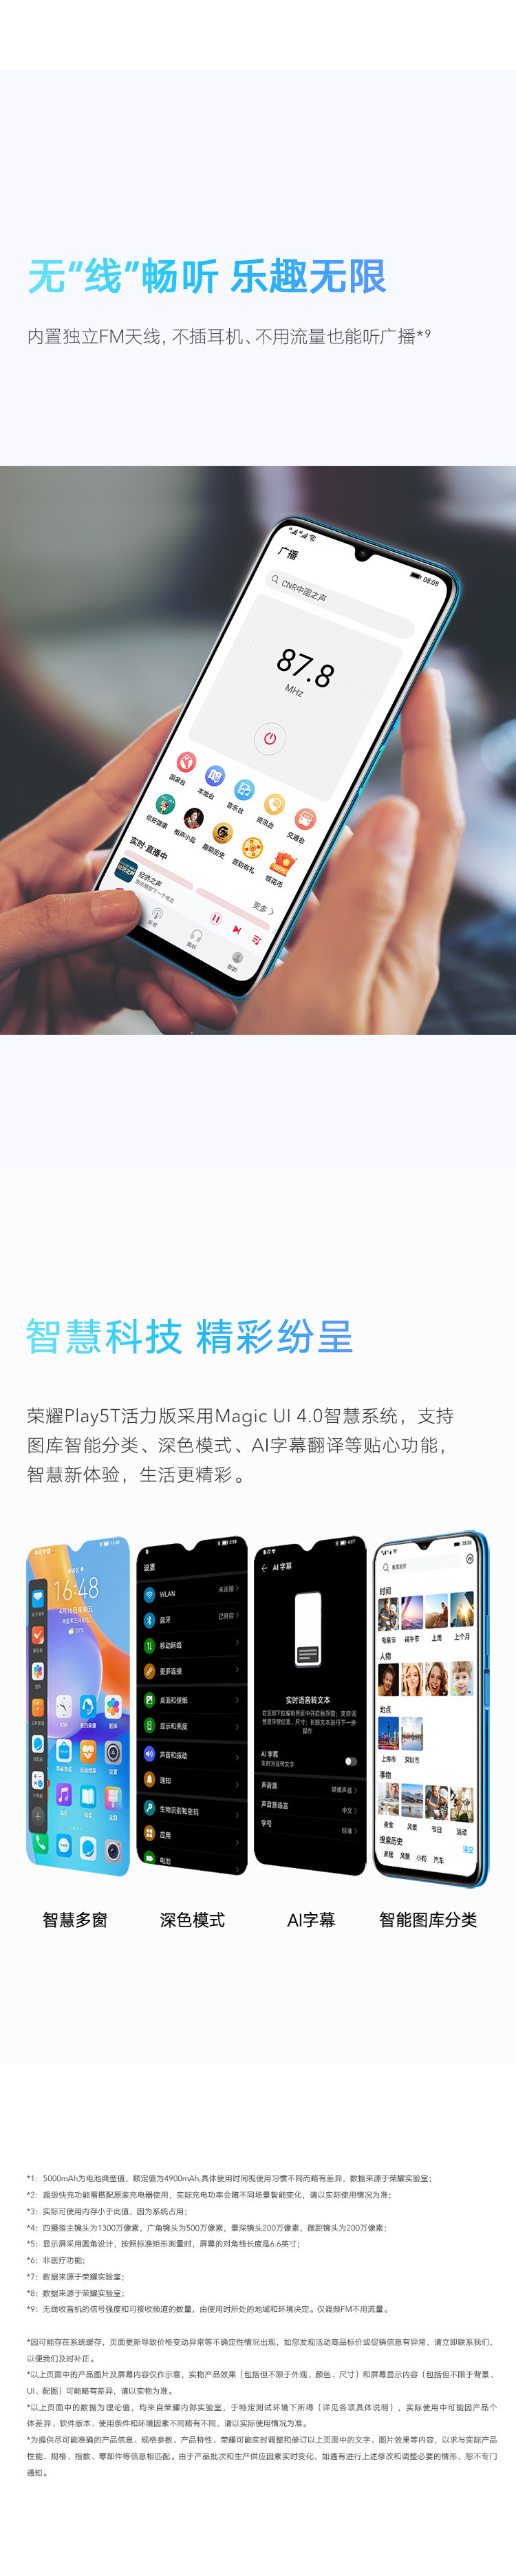 荣耀/HONOR Play5T活力版 超级快充 5000mAh大电池 6.6英寸全面屏 全网通